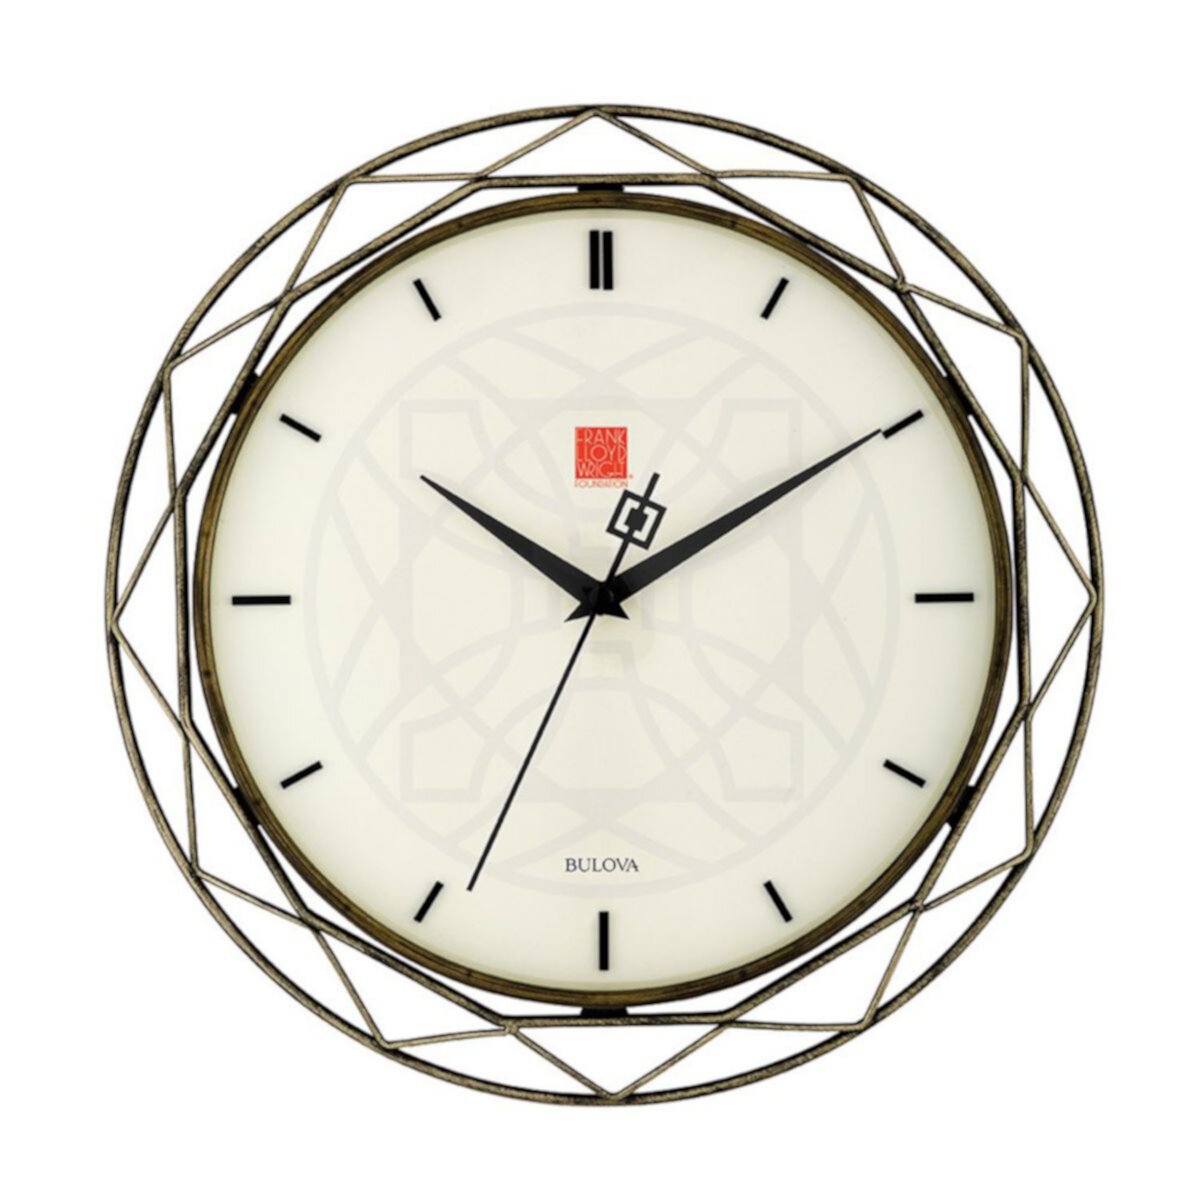 Часы 14 34. Bulova Frank Lloyd Wright часы. Часы Bulova c8671297. Часы настенные Булова. Bulova c860929.